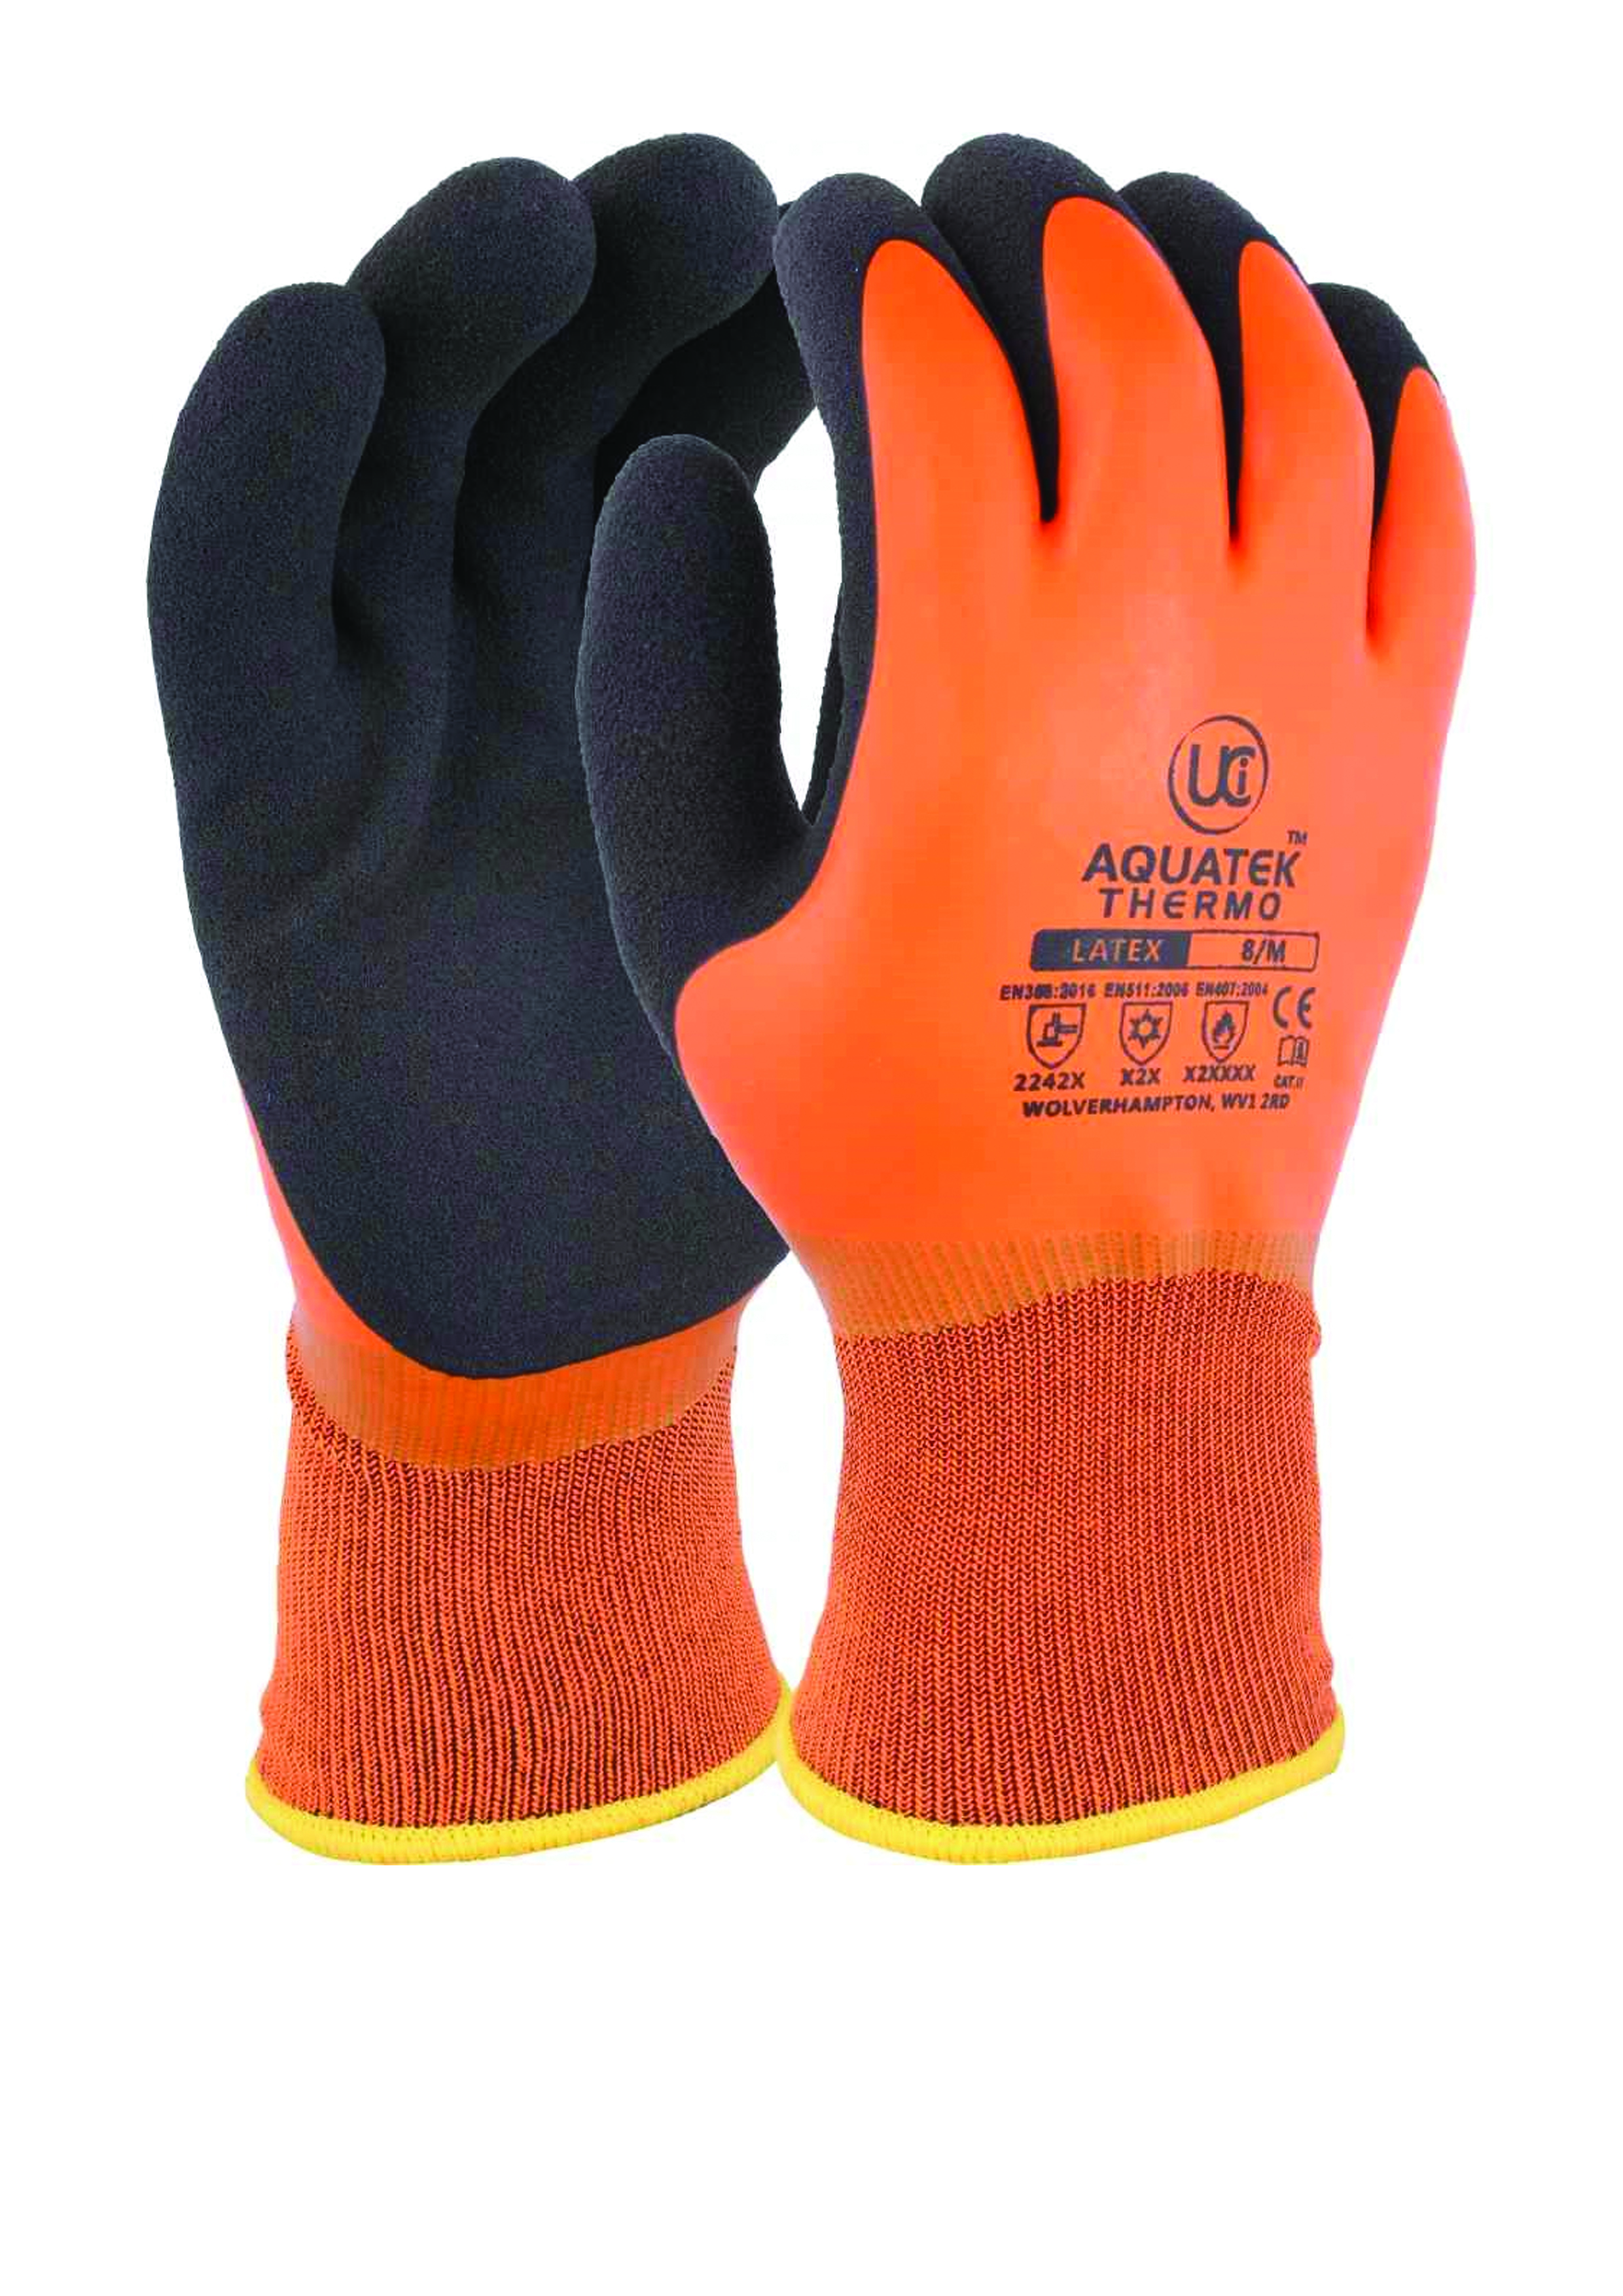 Aquatek Thermo Orange Glove Medium (8)